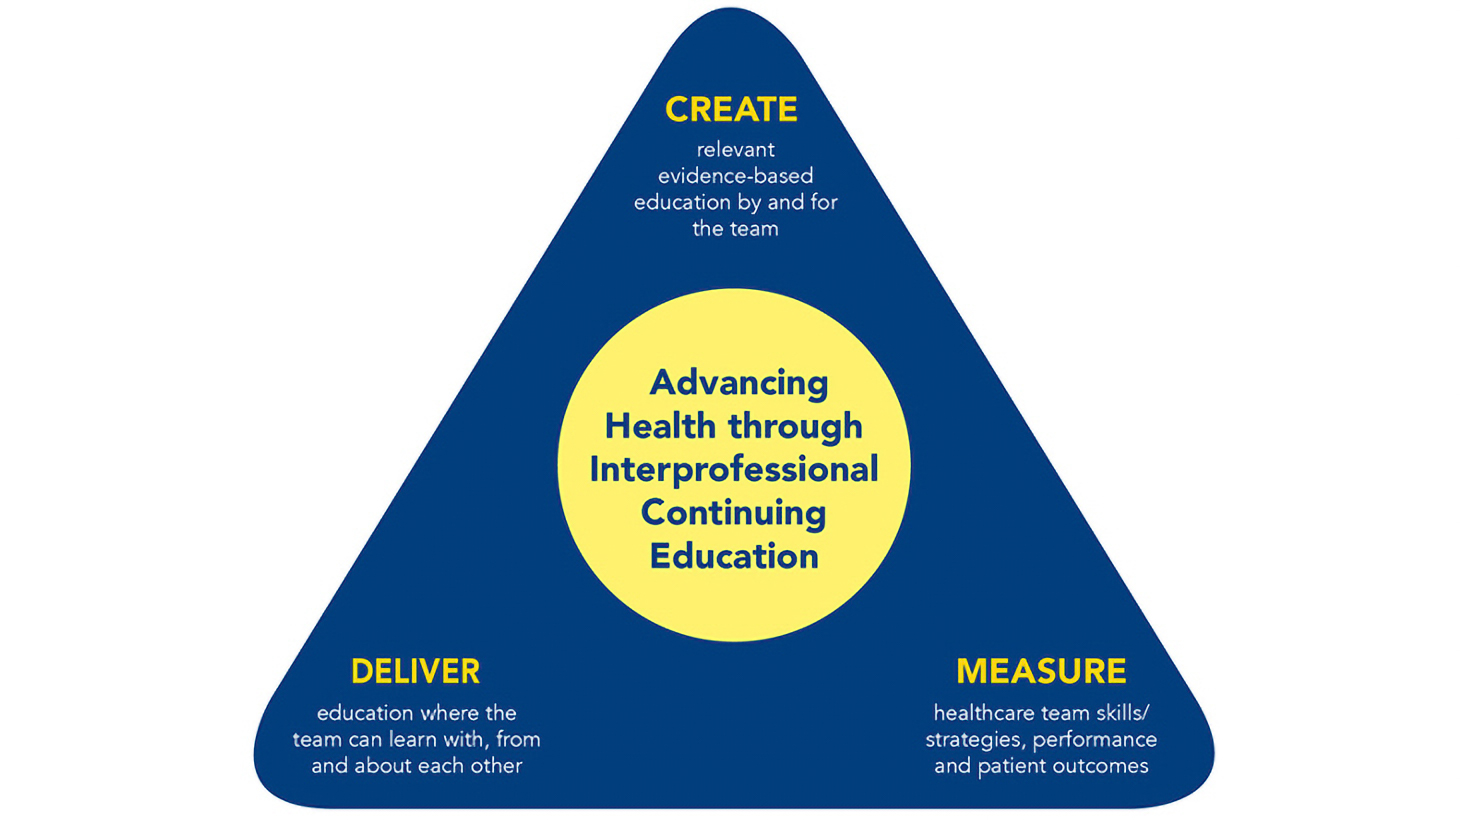 信息图表说明了MedStar健康的跨专业继续教育计划的3个原则-创造，交付和衡量。